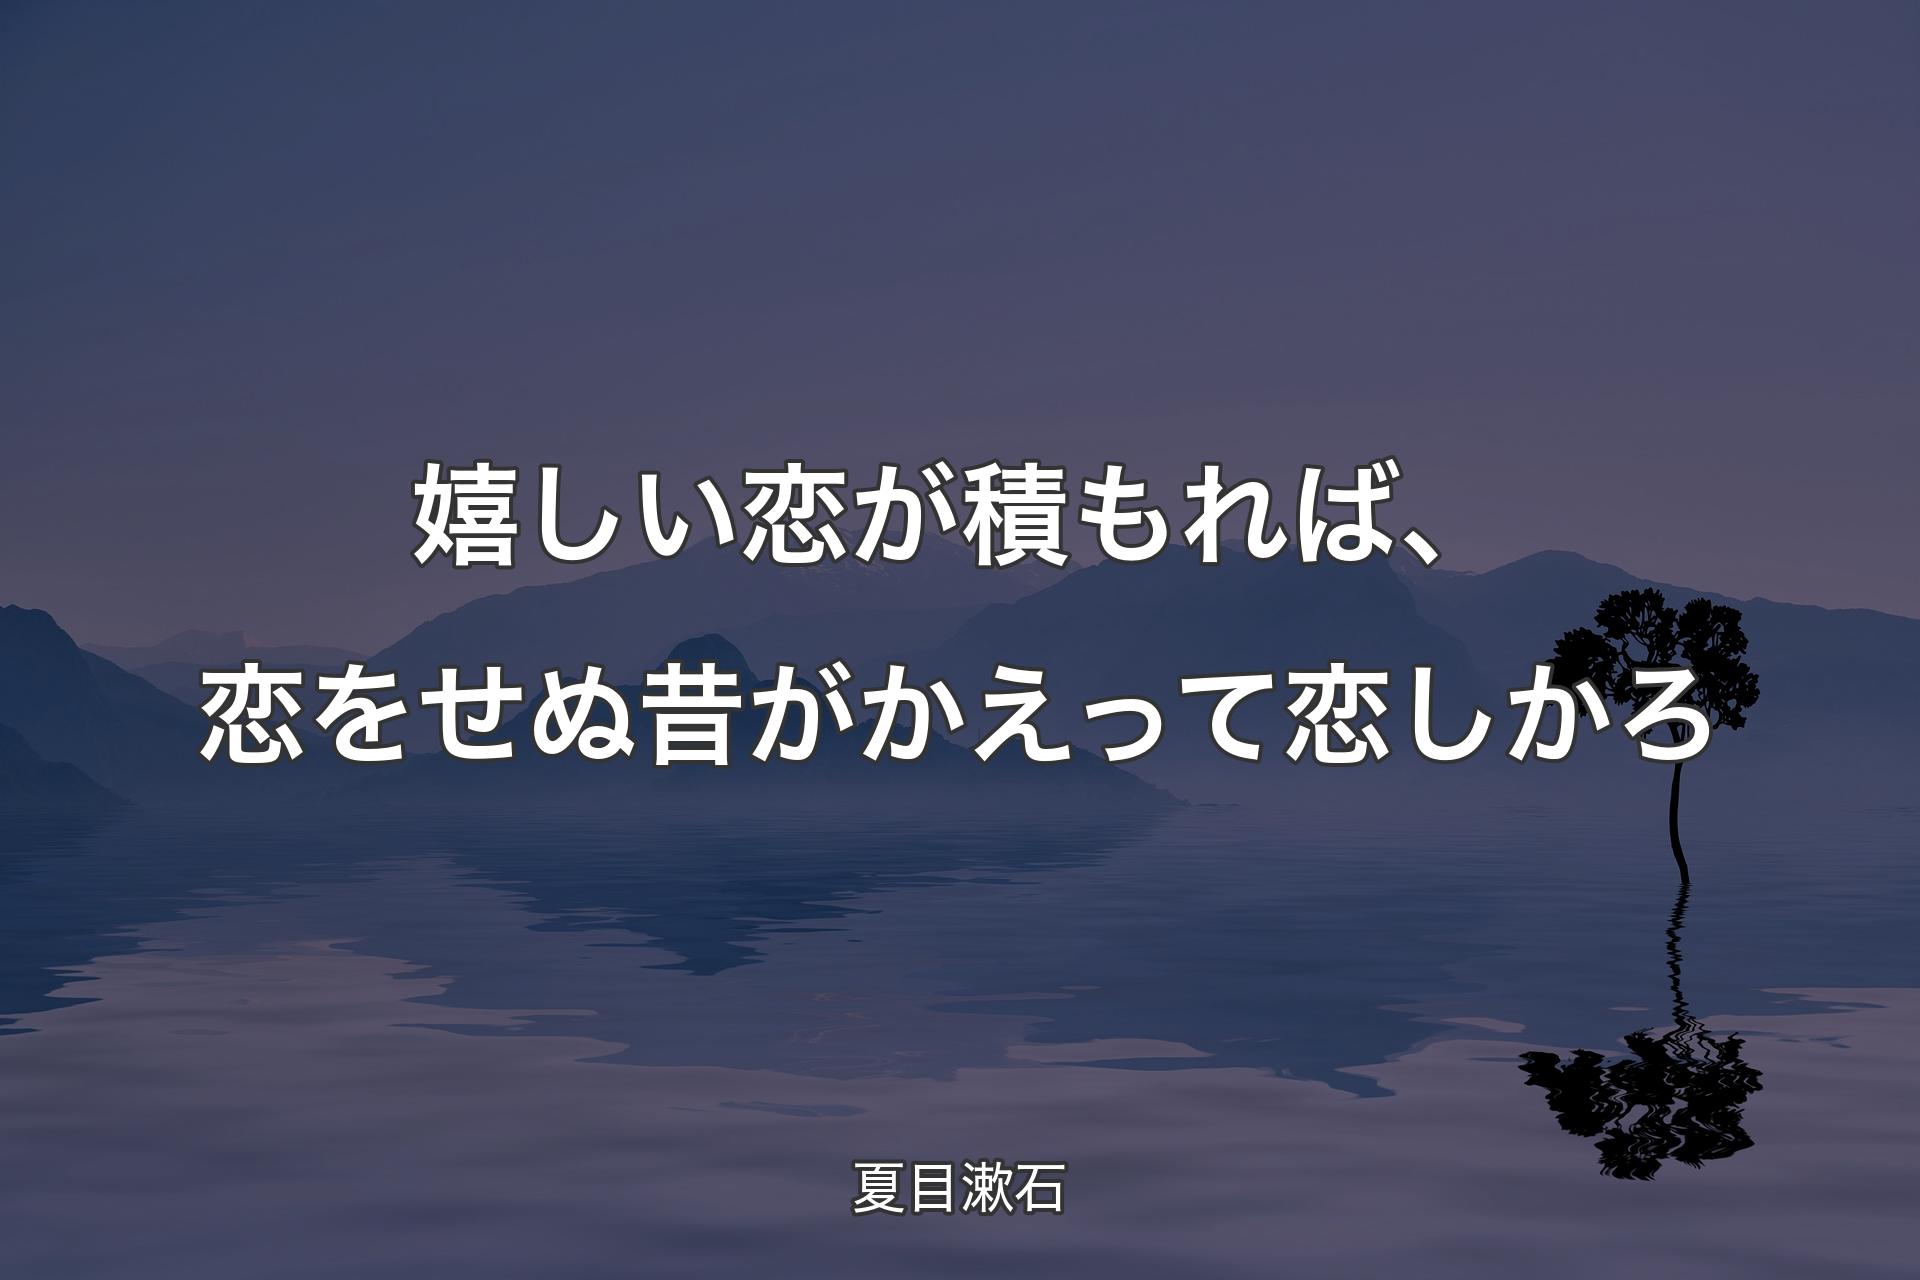 【背景4】嬉しい恋が積もれば、恋をせぬ昔がかえって恋しかろ - 夏目漱石